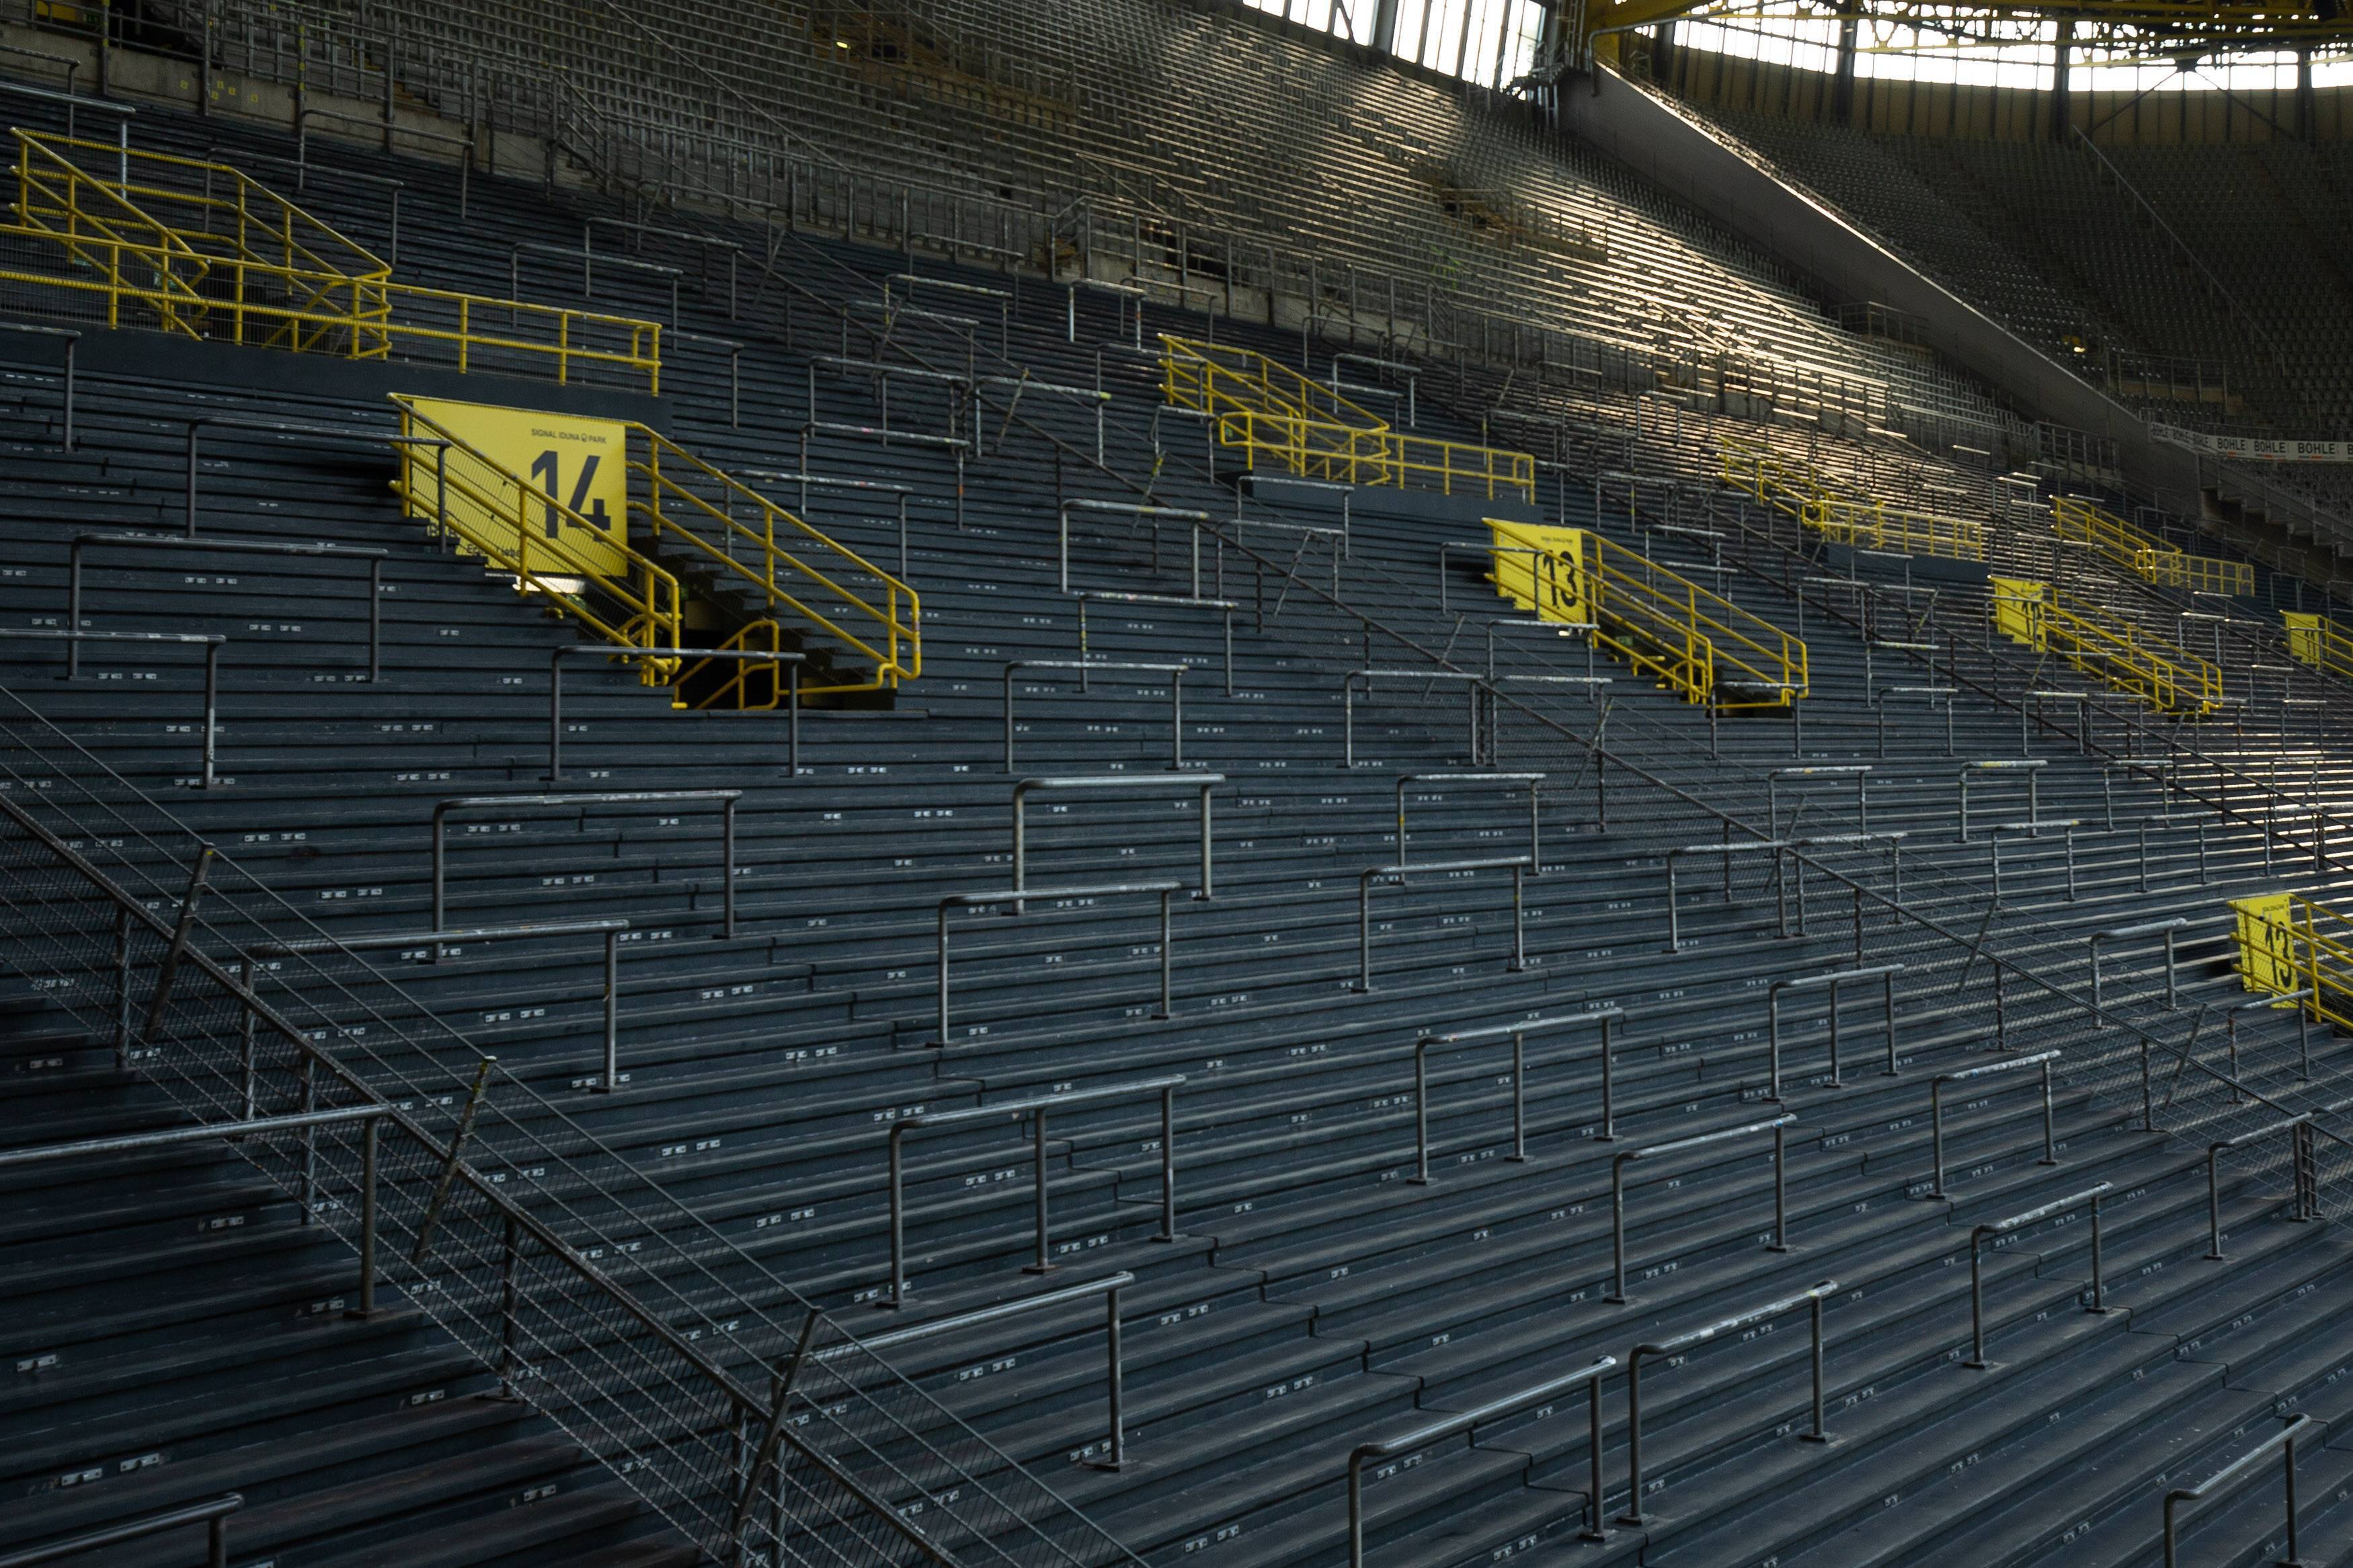 Leere Ränge im Dortmunder Stadion - wie werden Geisterspiele gestaltet?